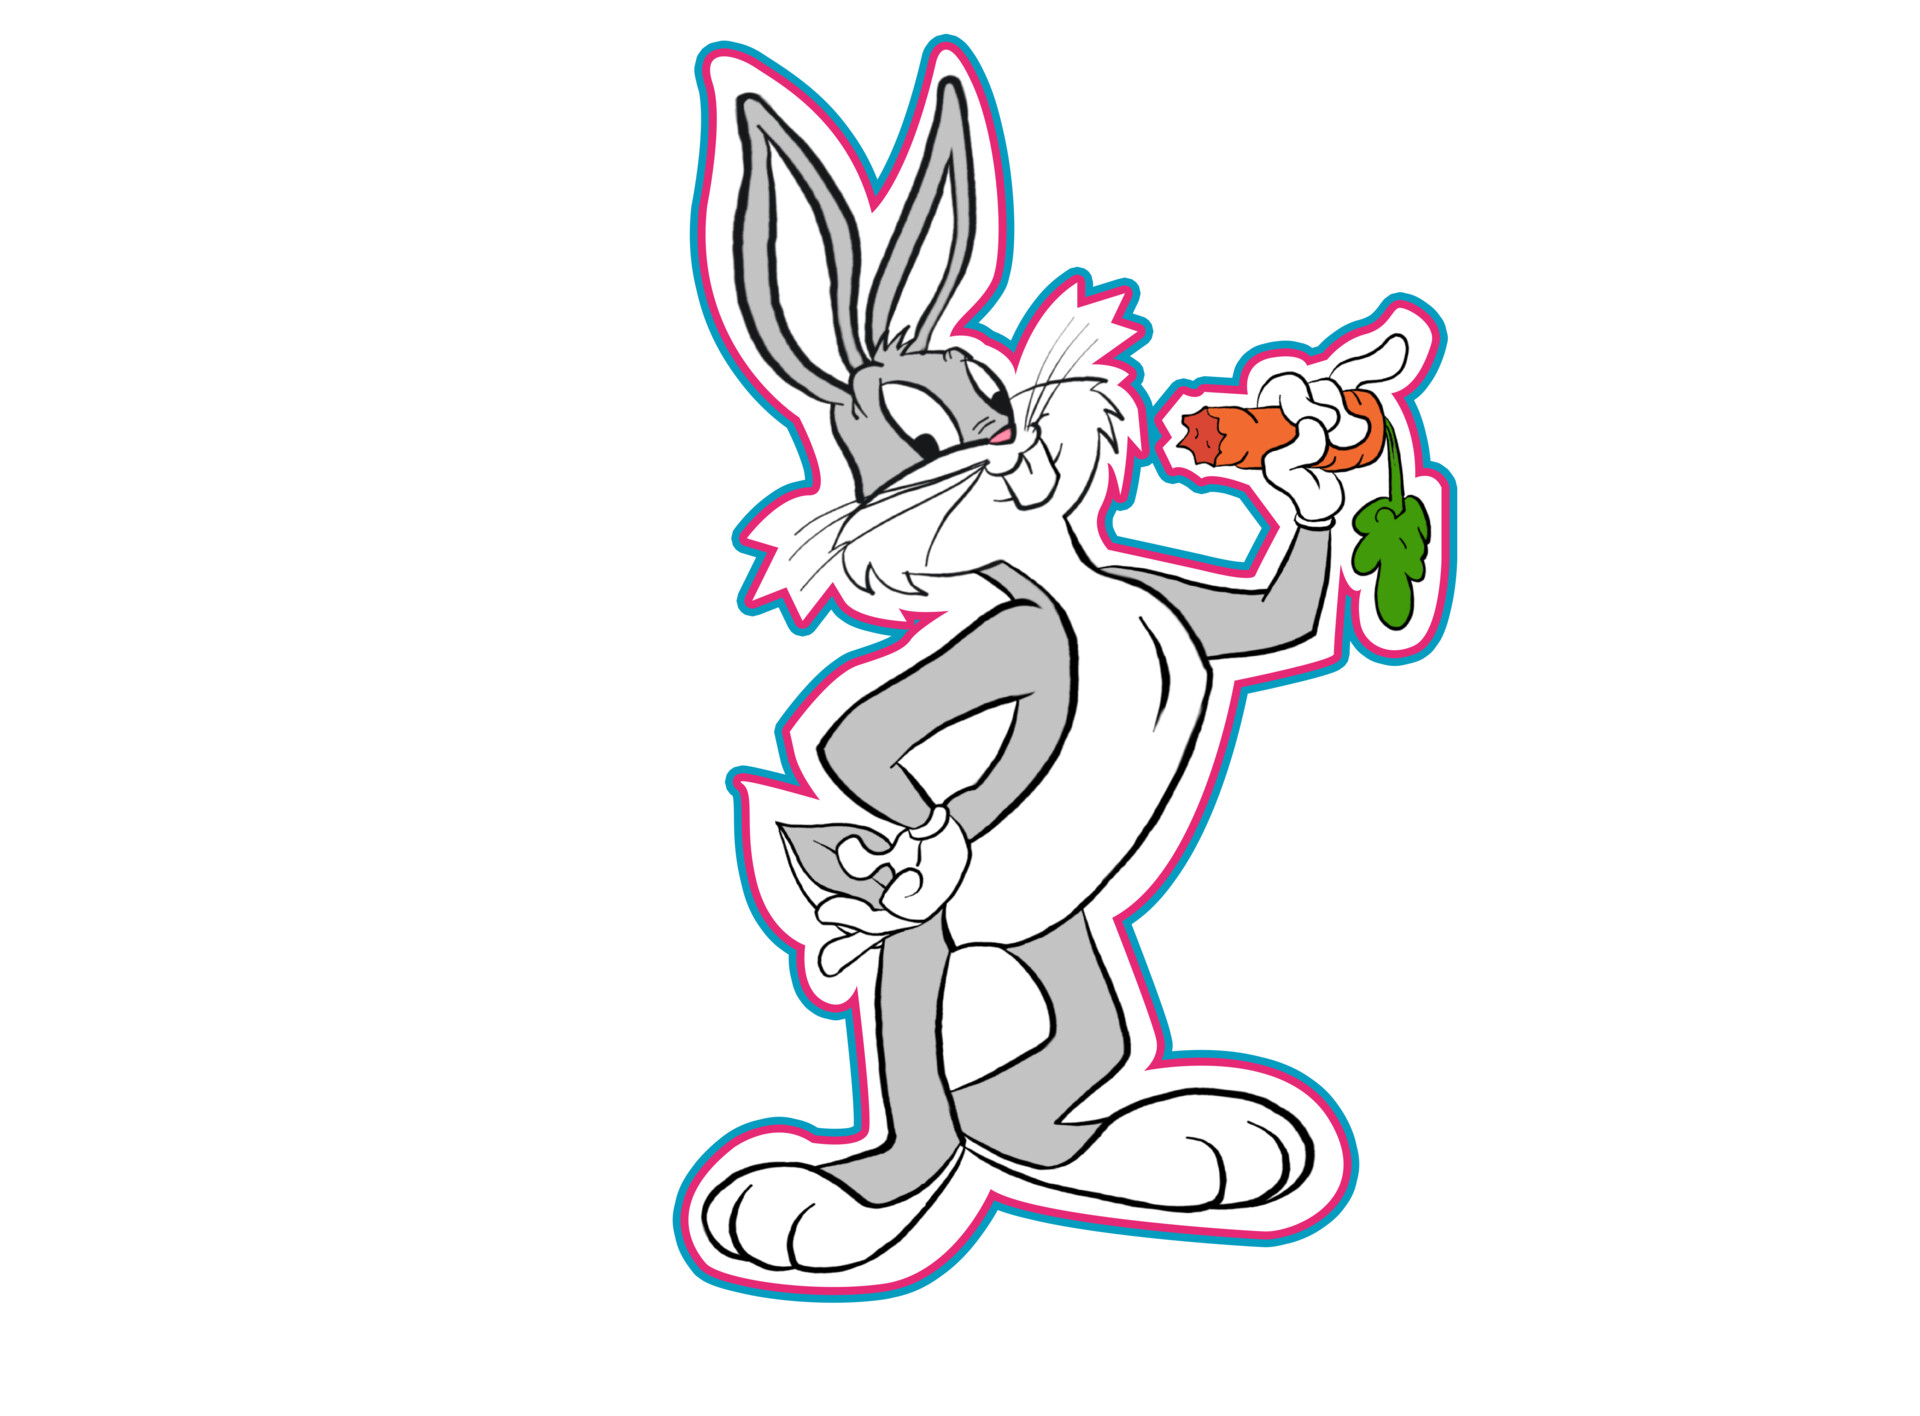 ArtStation - Bugs Bunny